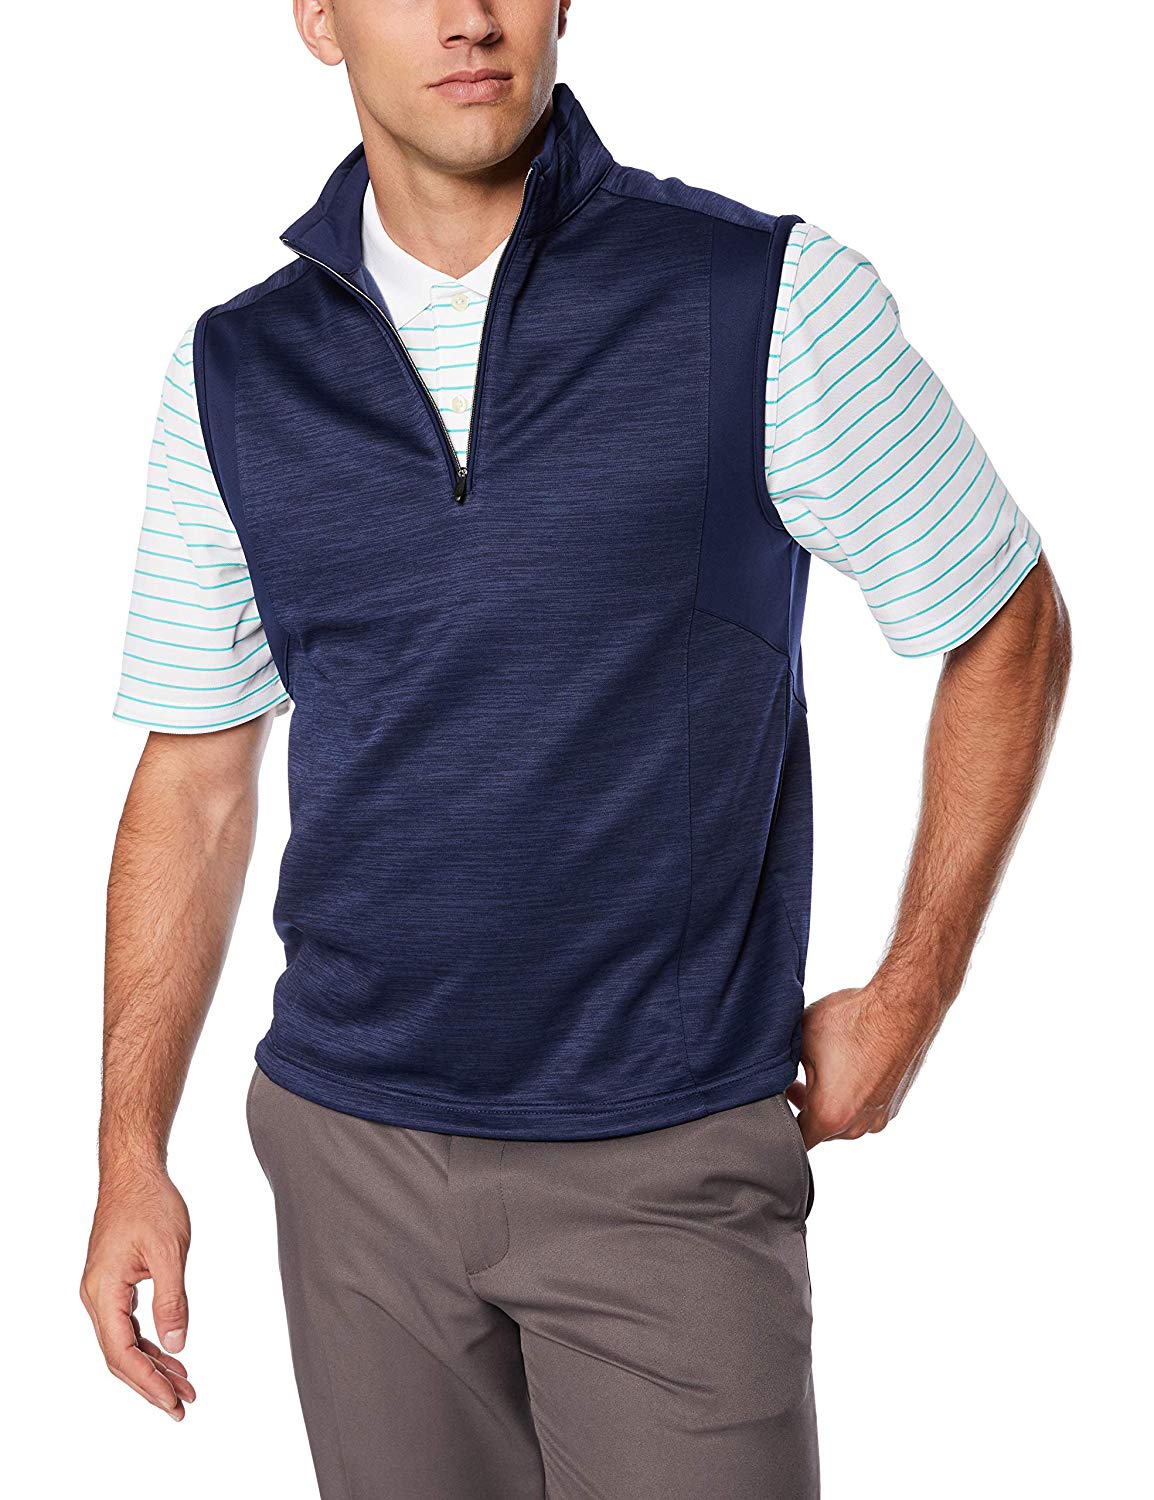 Greg Norman Mens Heathered Fleece Golf Vests